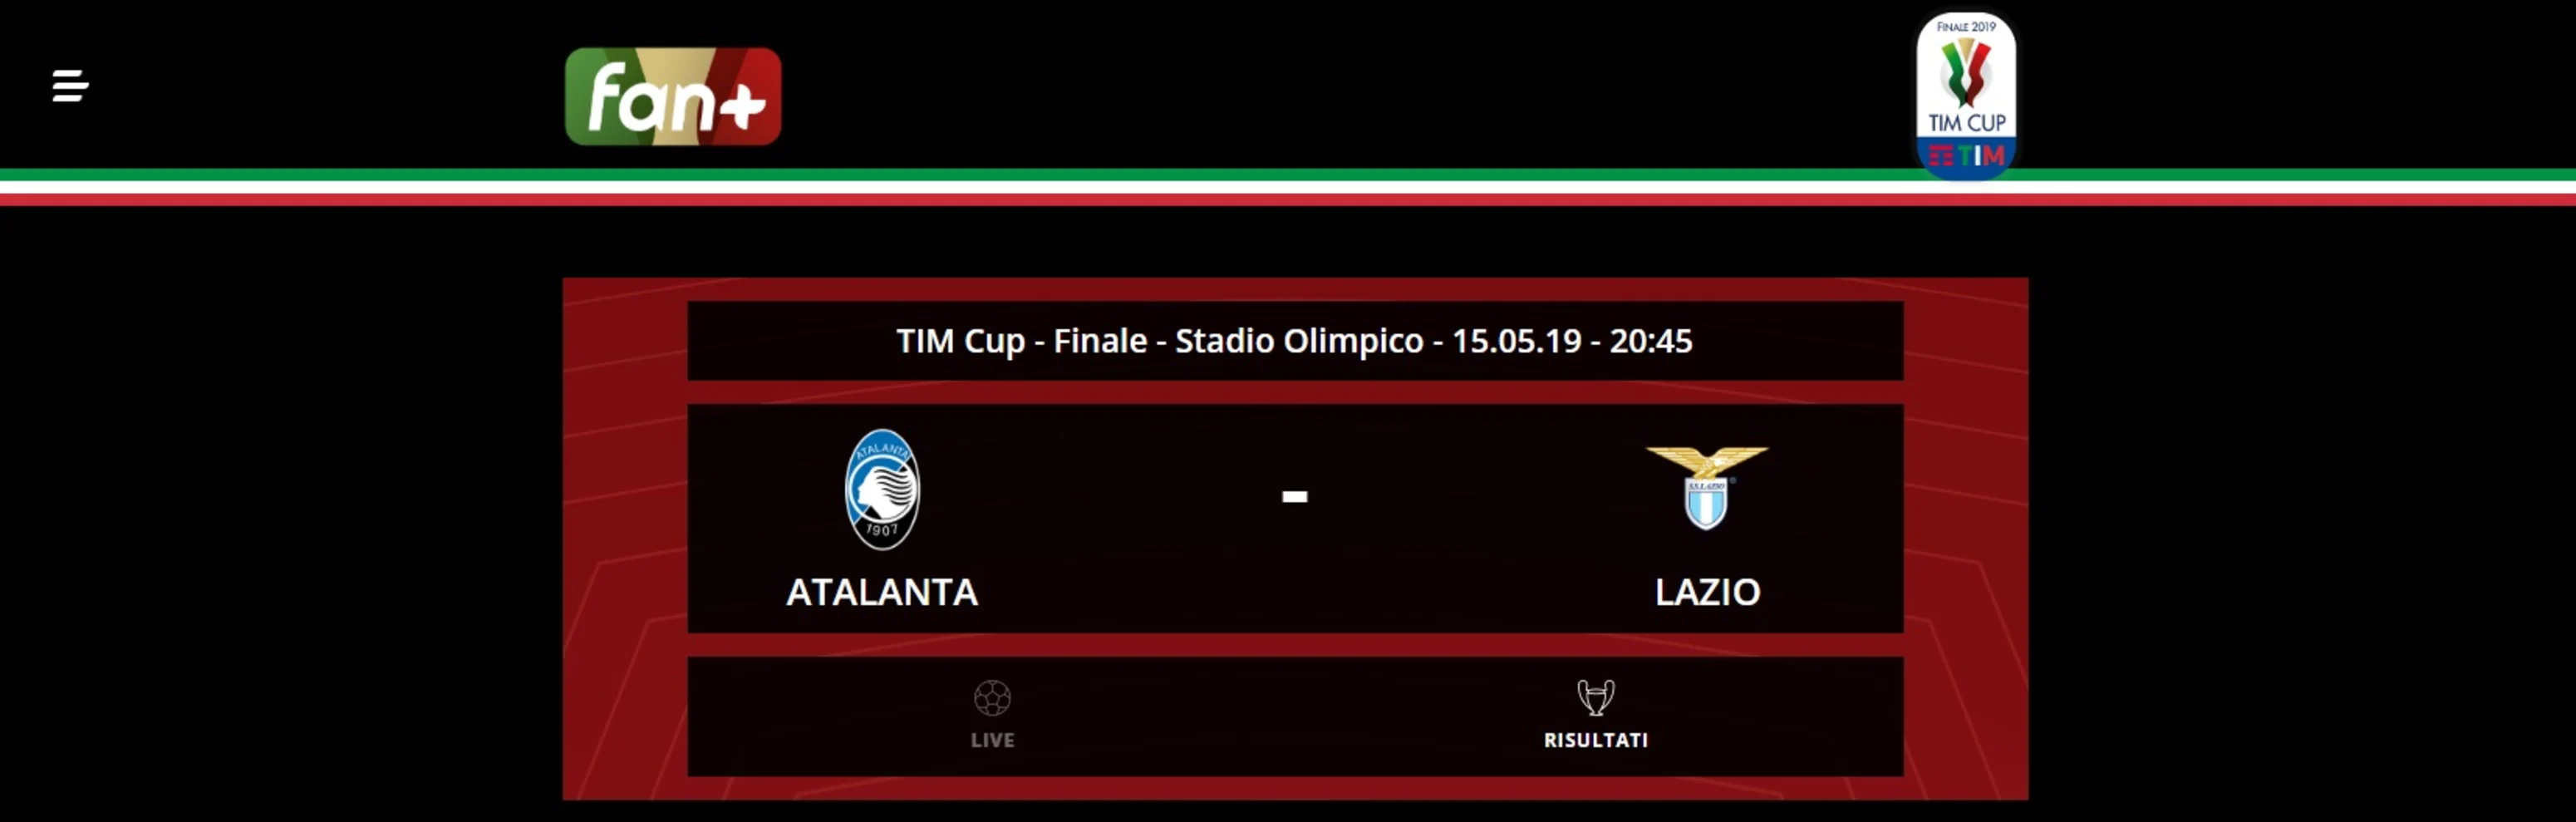 Lega Serie A app Tim Cup Finale 2019 FAN+